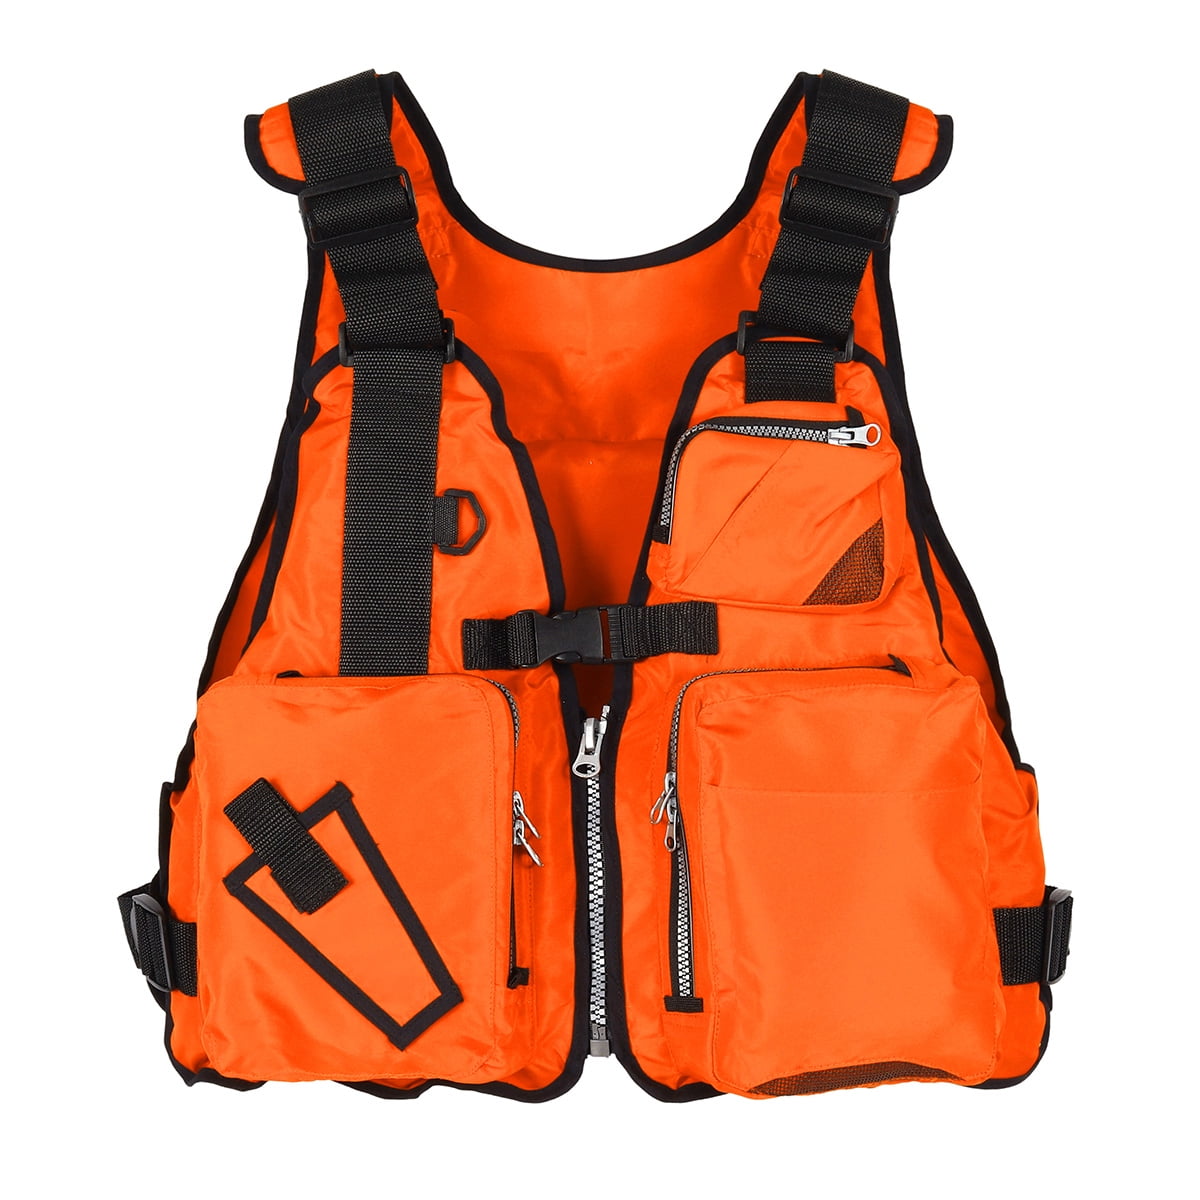 Fishing Life Jacket Multiple Pockets Floatation Vest Buoyancy Waistcoat P4I4 